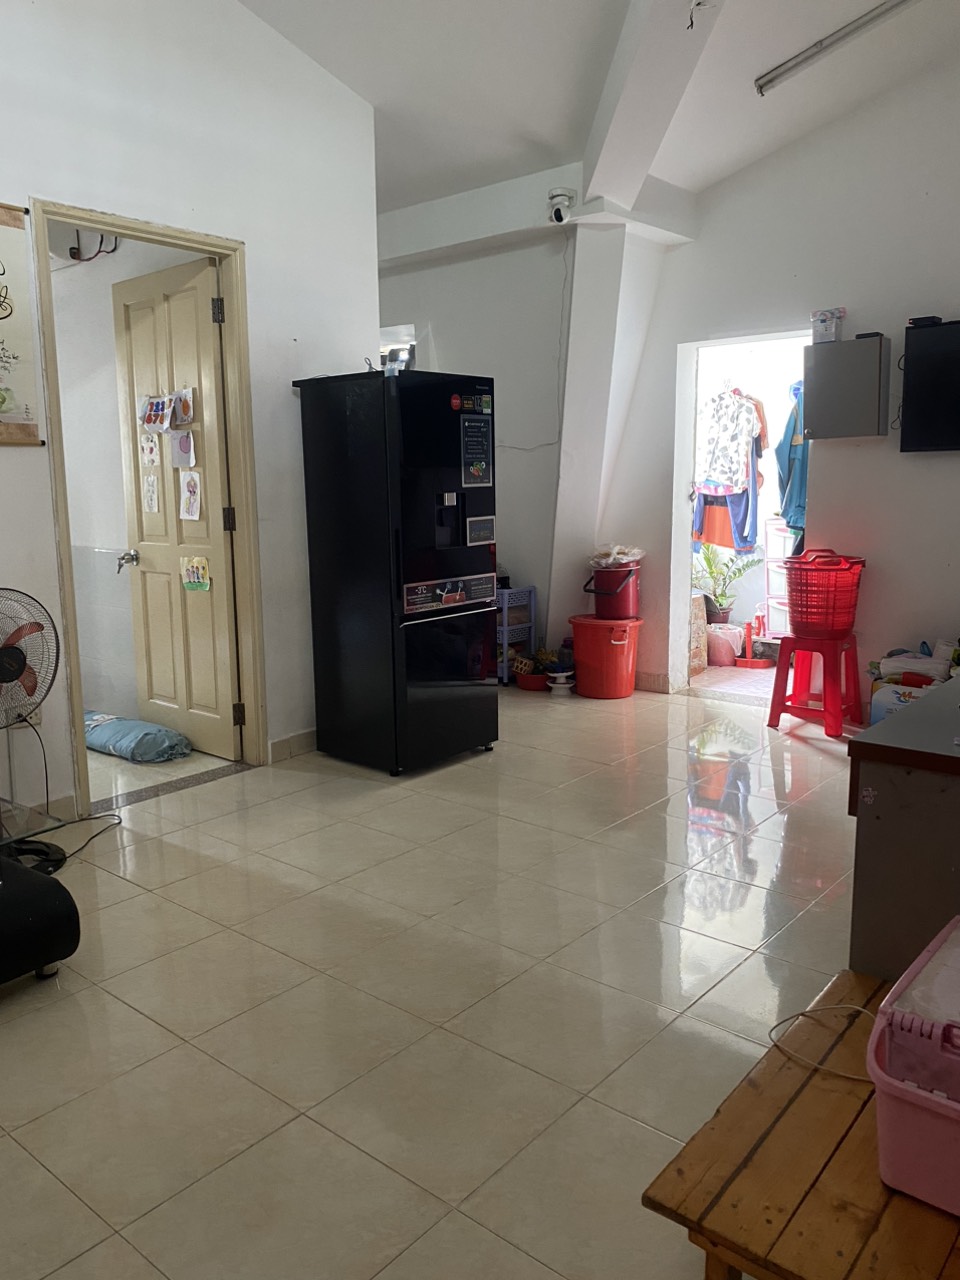 Cần cho thuê căn chung cư An Sương một phòng ngủ một phòng khách một toilet  Quận 12 TP Hồ Chí Minh - Ảnh 3